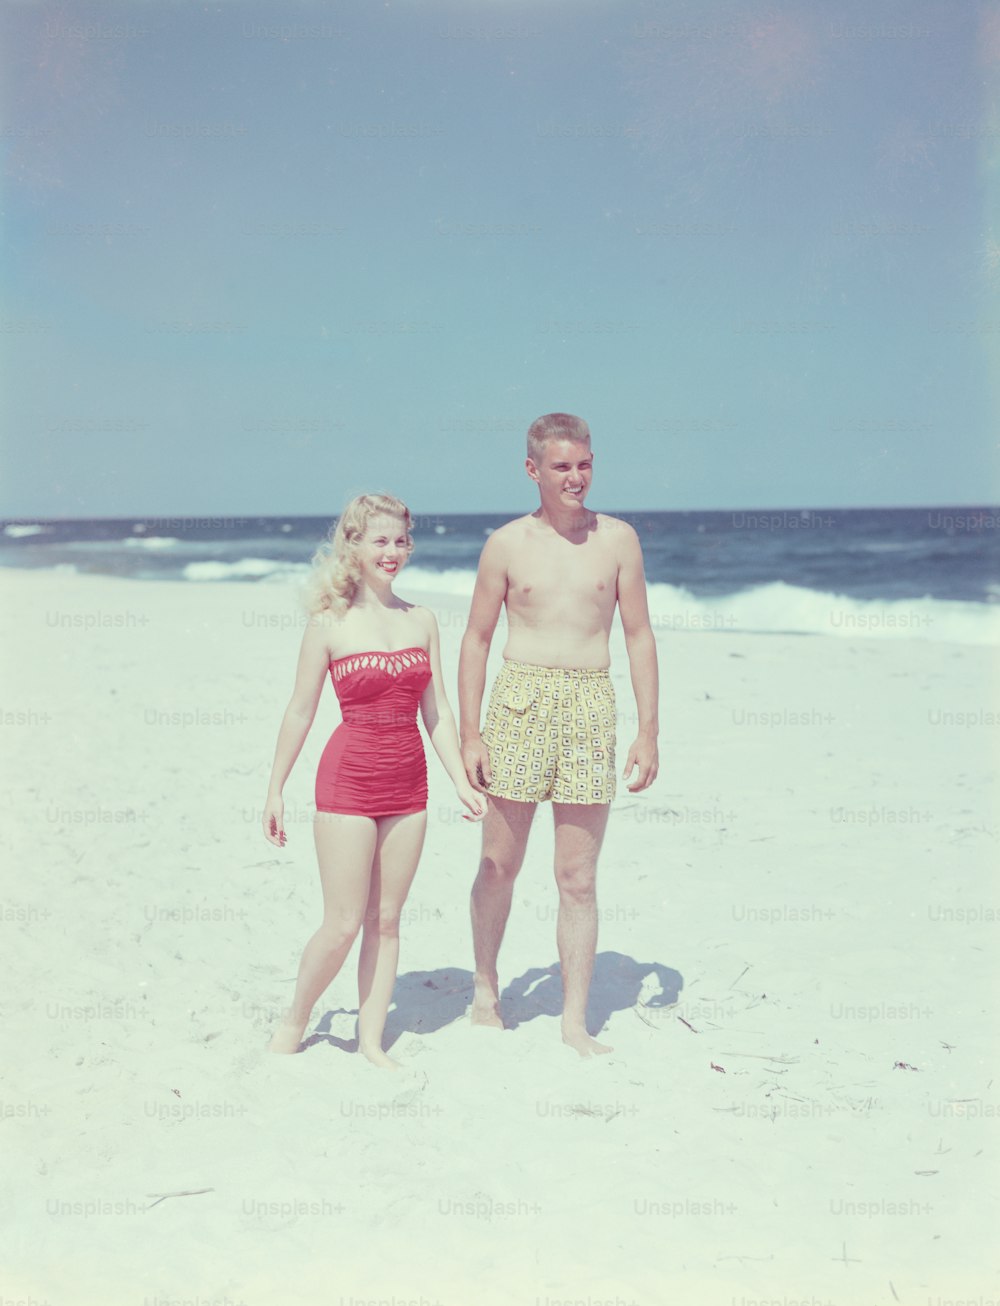 アメリカ合衆国 - 1950年代頃:ビーチで10代のカップル。